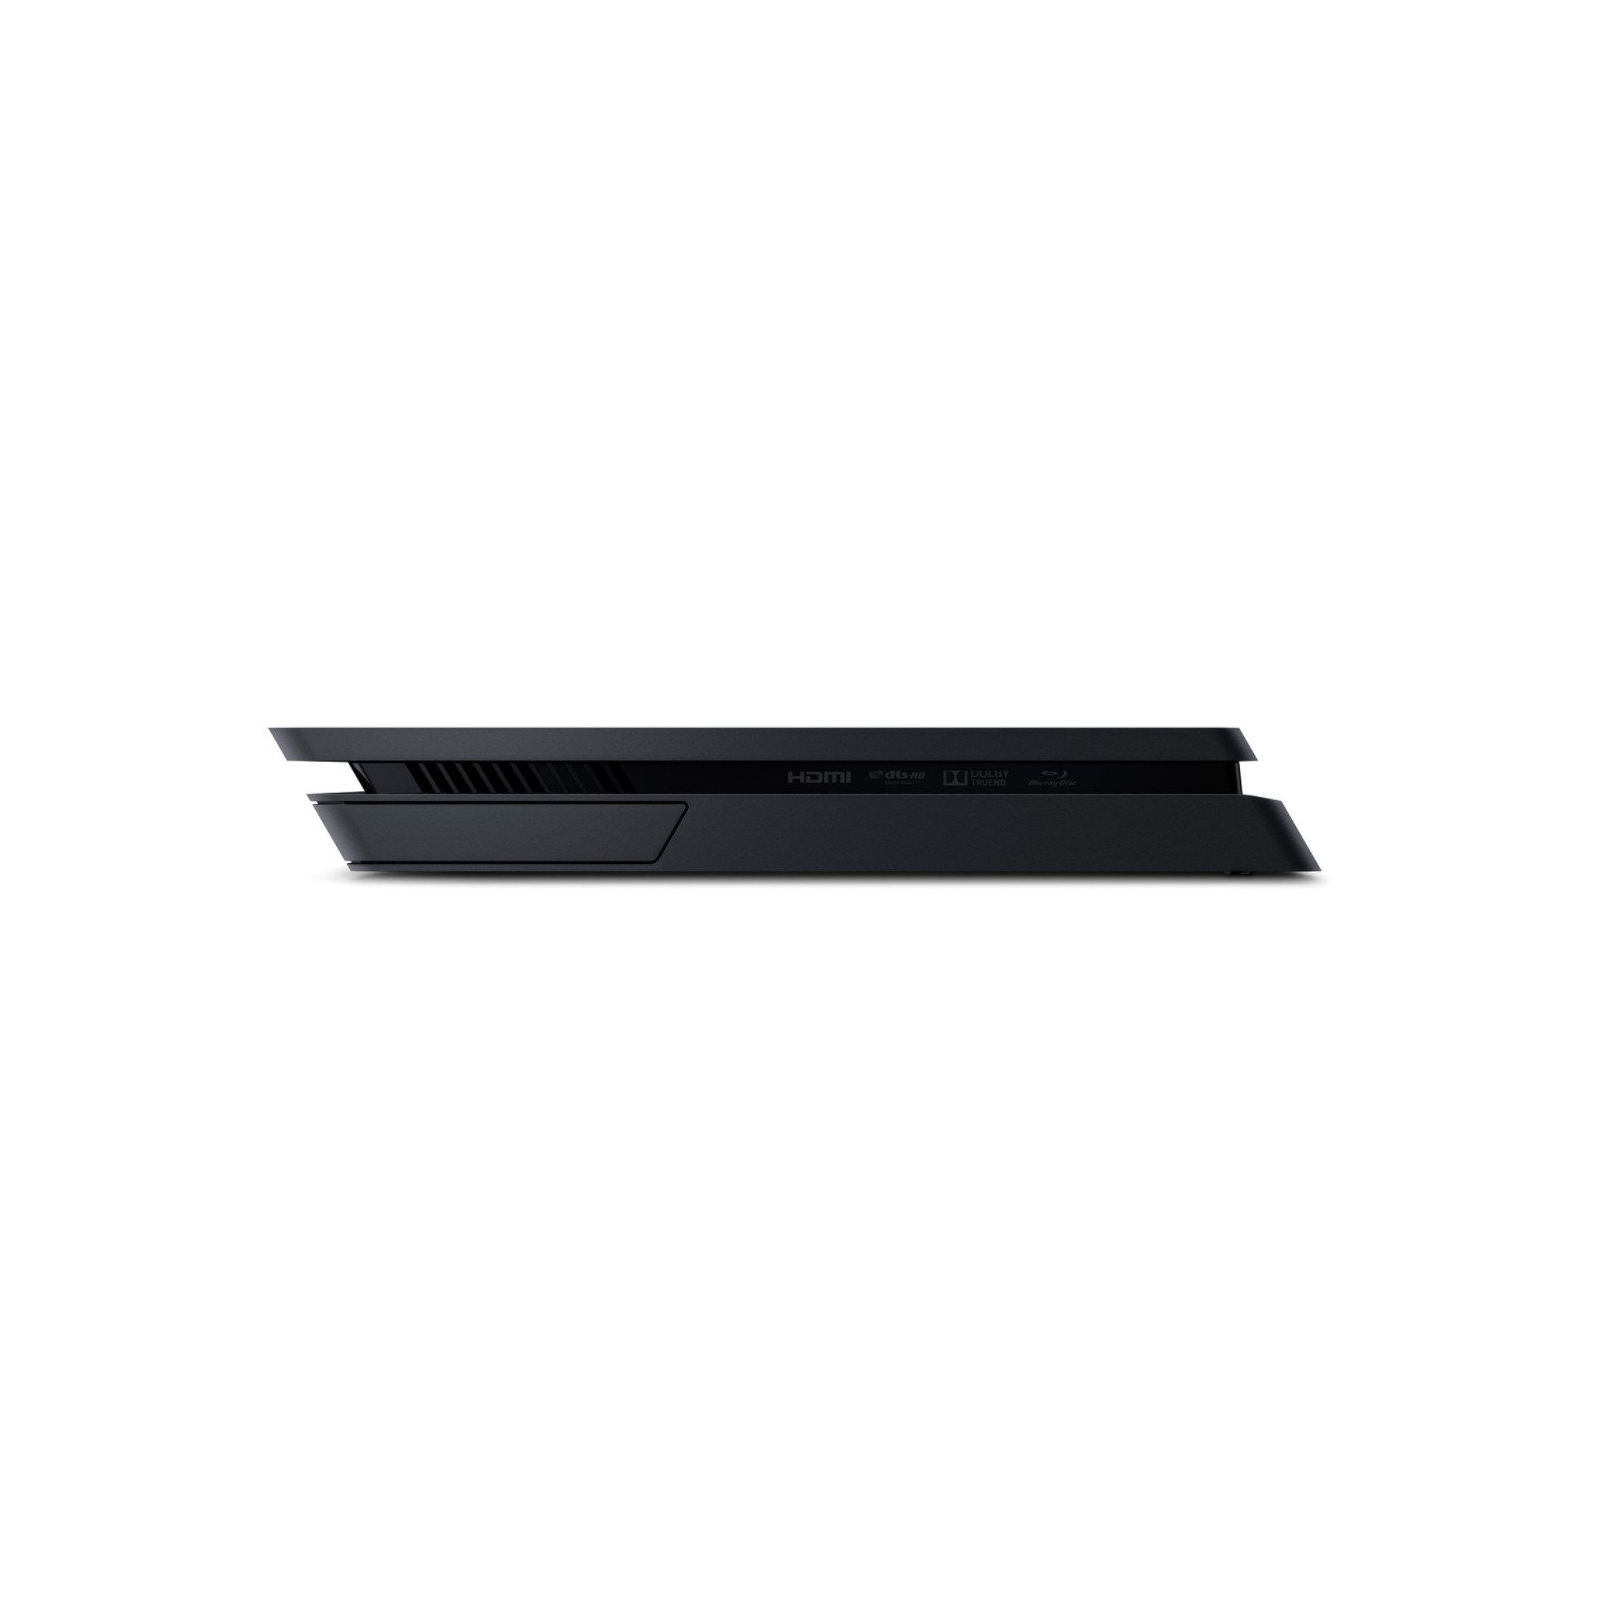 Игровая консоль Sony PlayStation 4 Slim 1Tb Black (Call of Duty WWII) (9942269) изображение 3